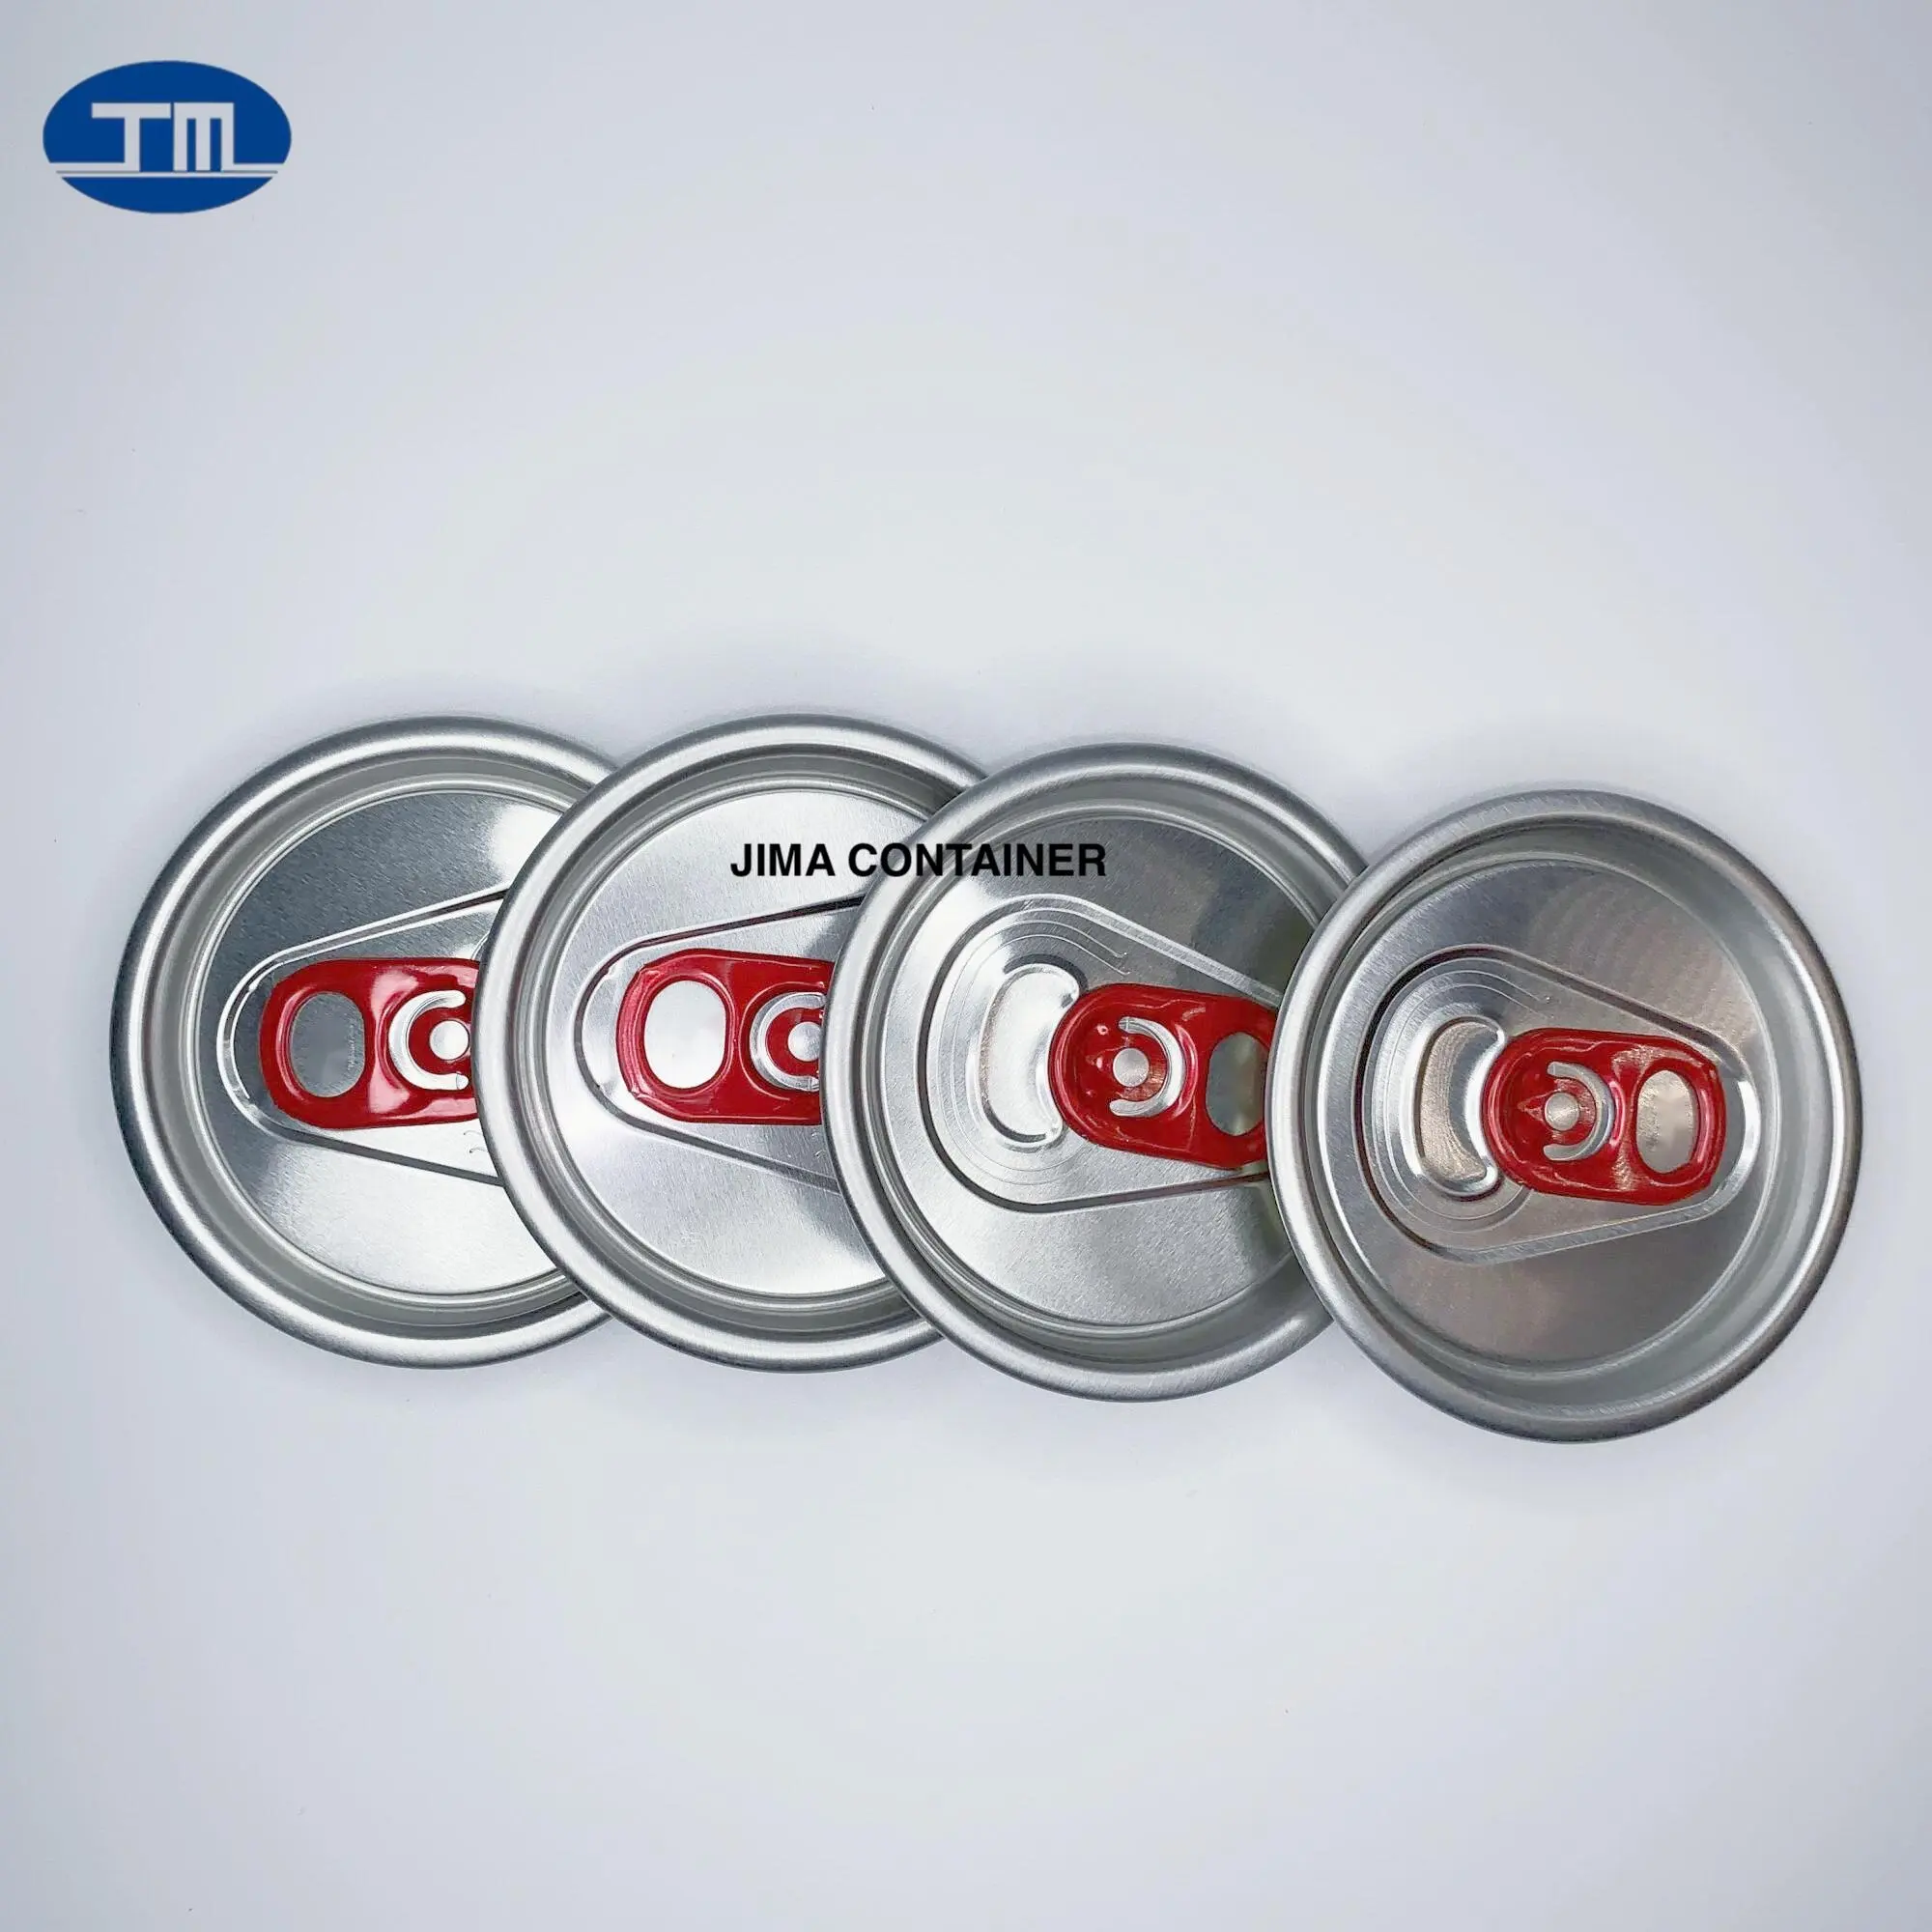 Coperchio per lattine prodotto caldo anello di trazione rosso coperchio in alluminio con apertura completa lattine di birra coperchio per lattine di chiusura